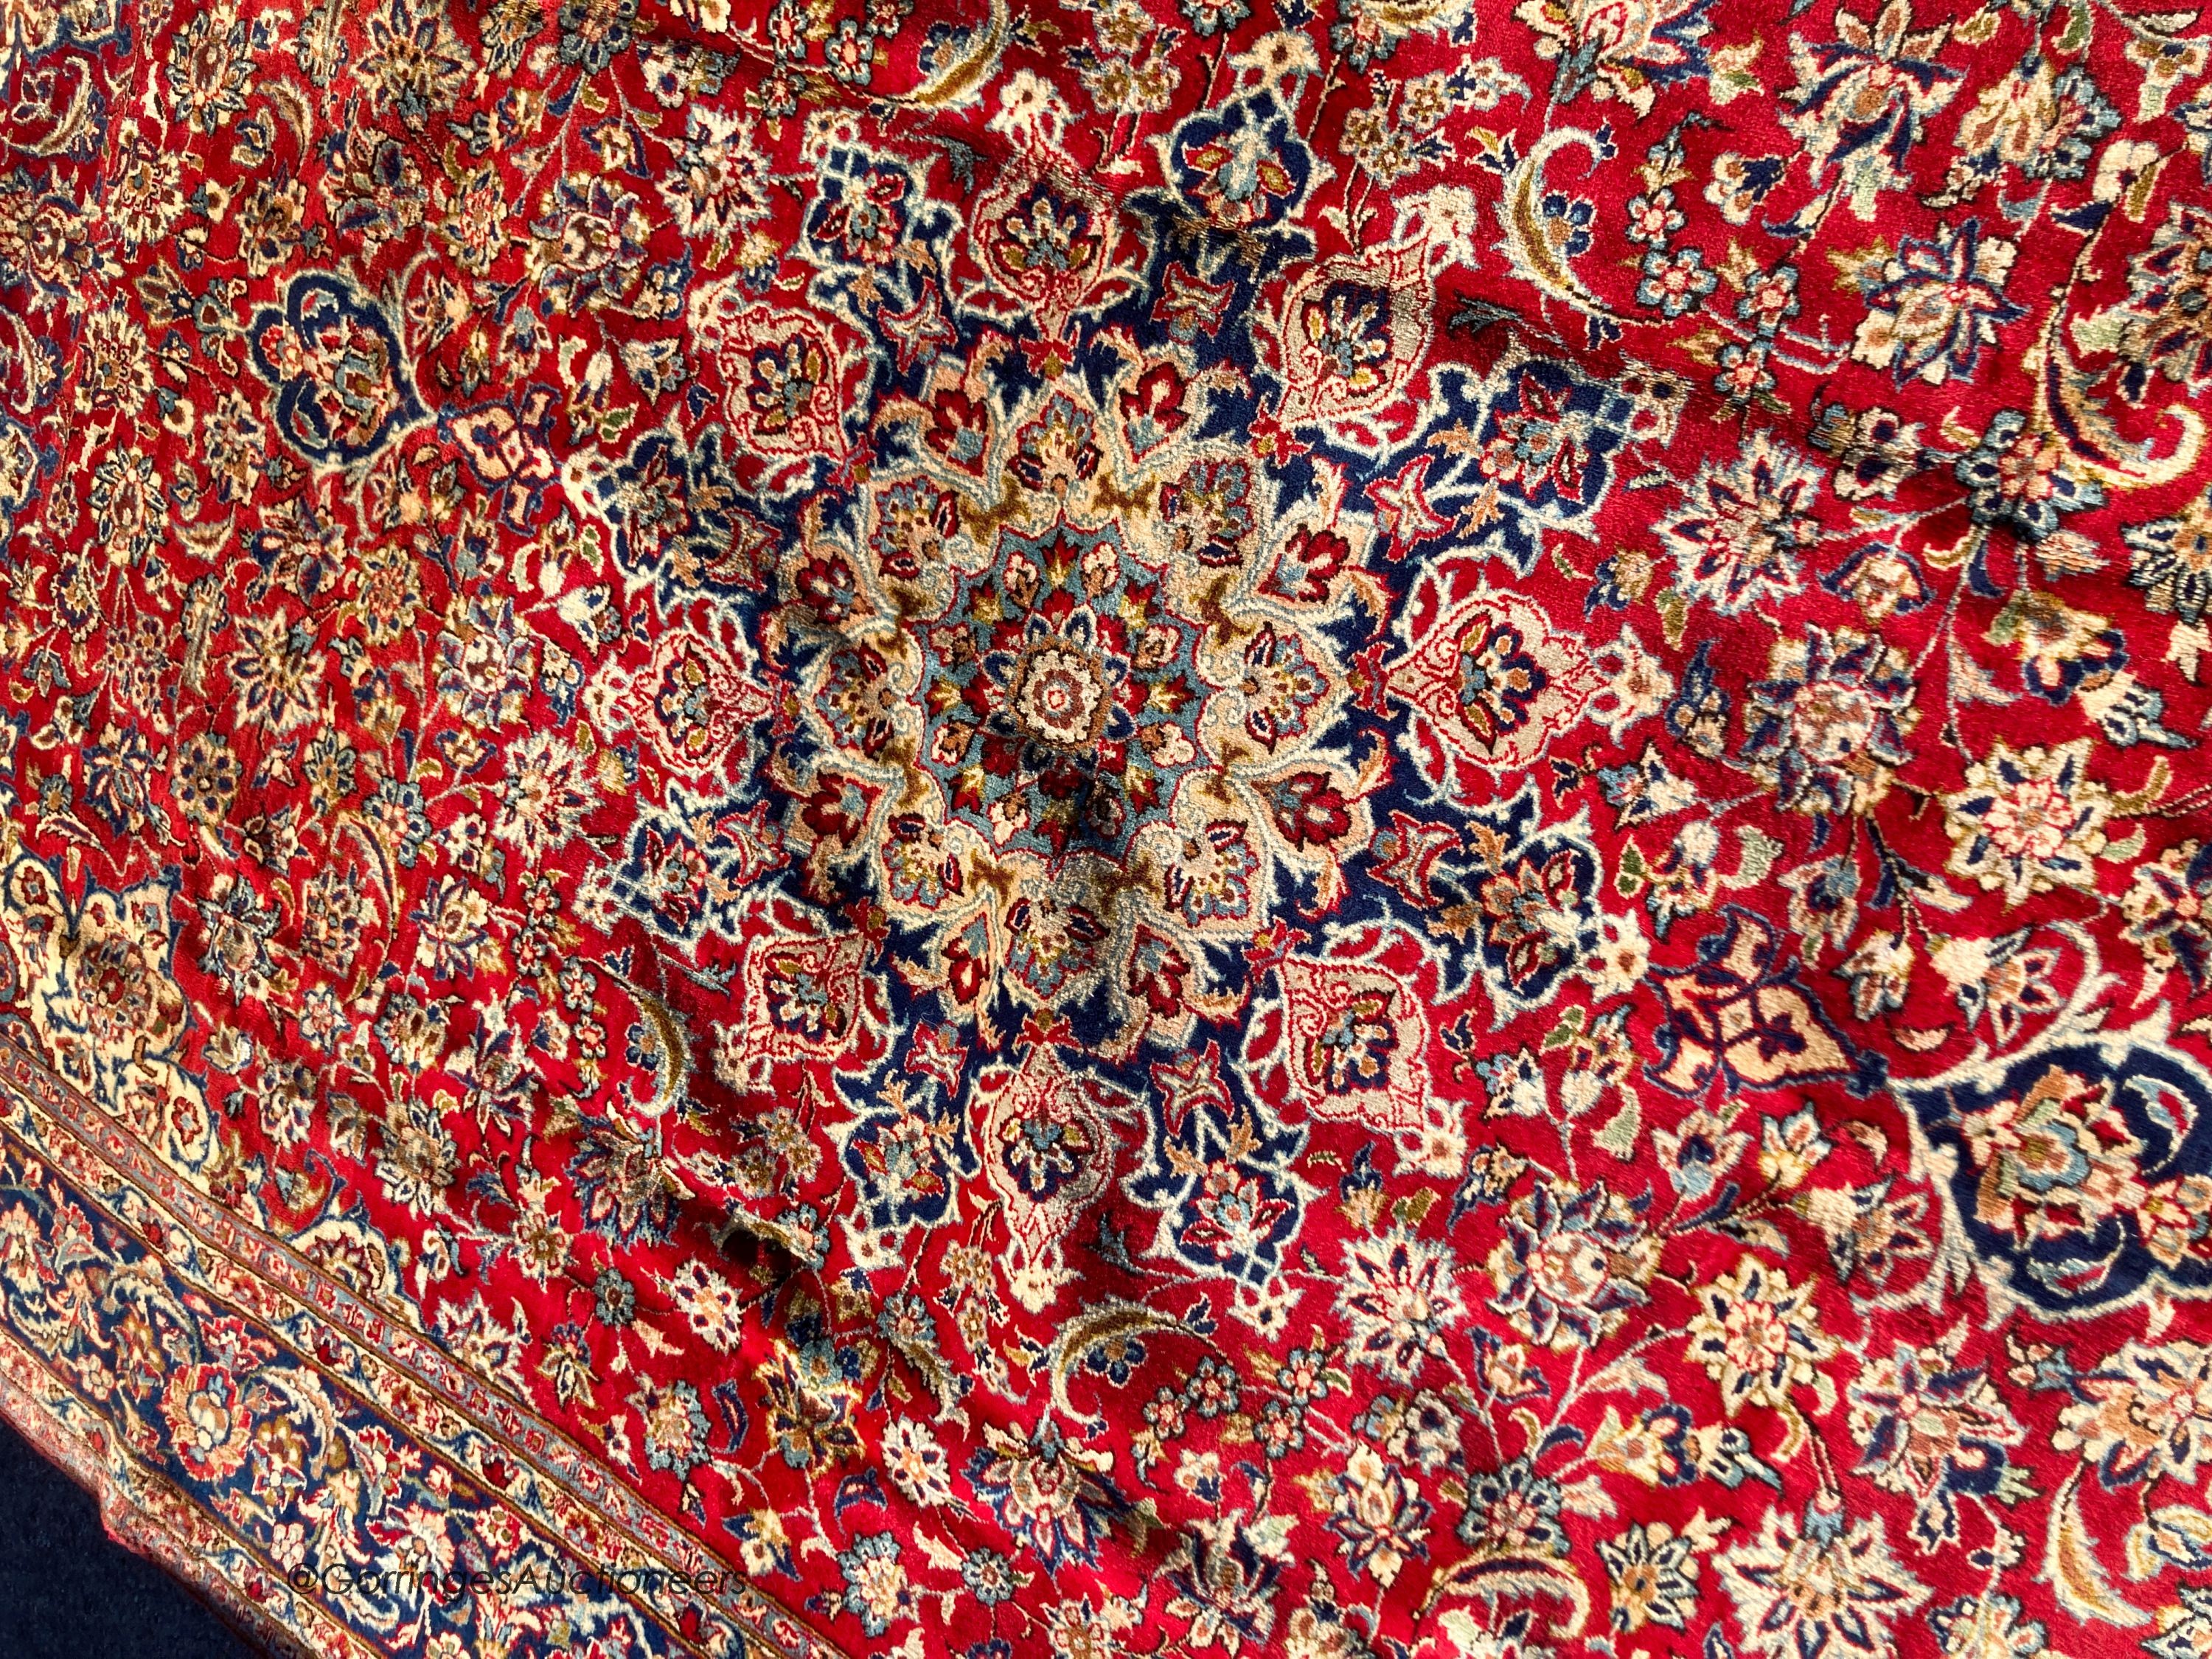 A Najaf Abad carpet, 300 x 212cm